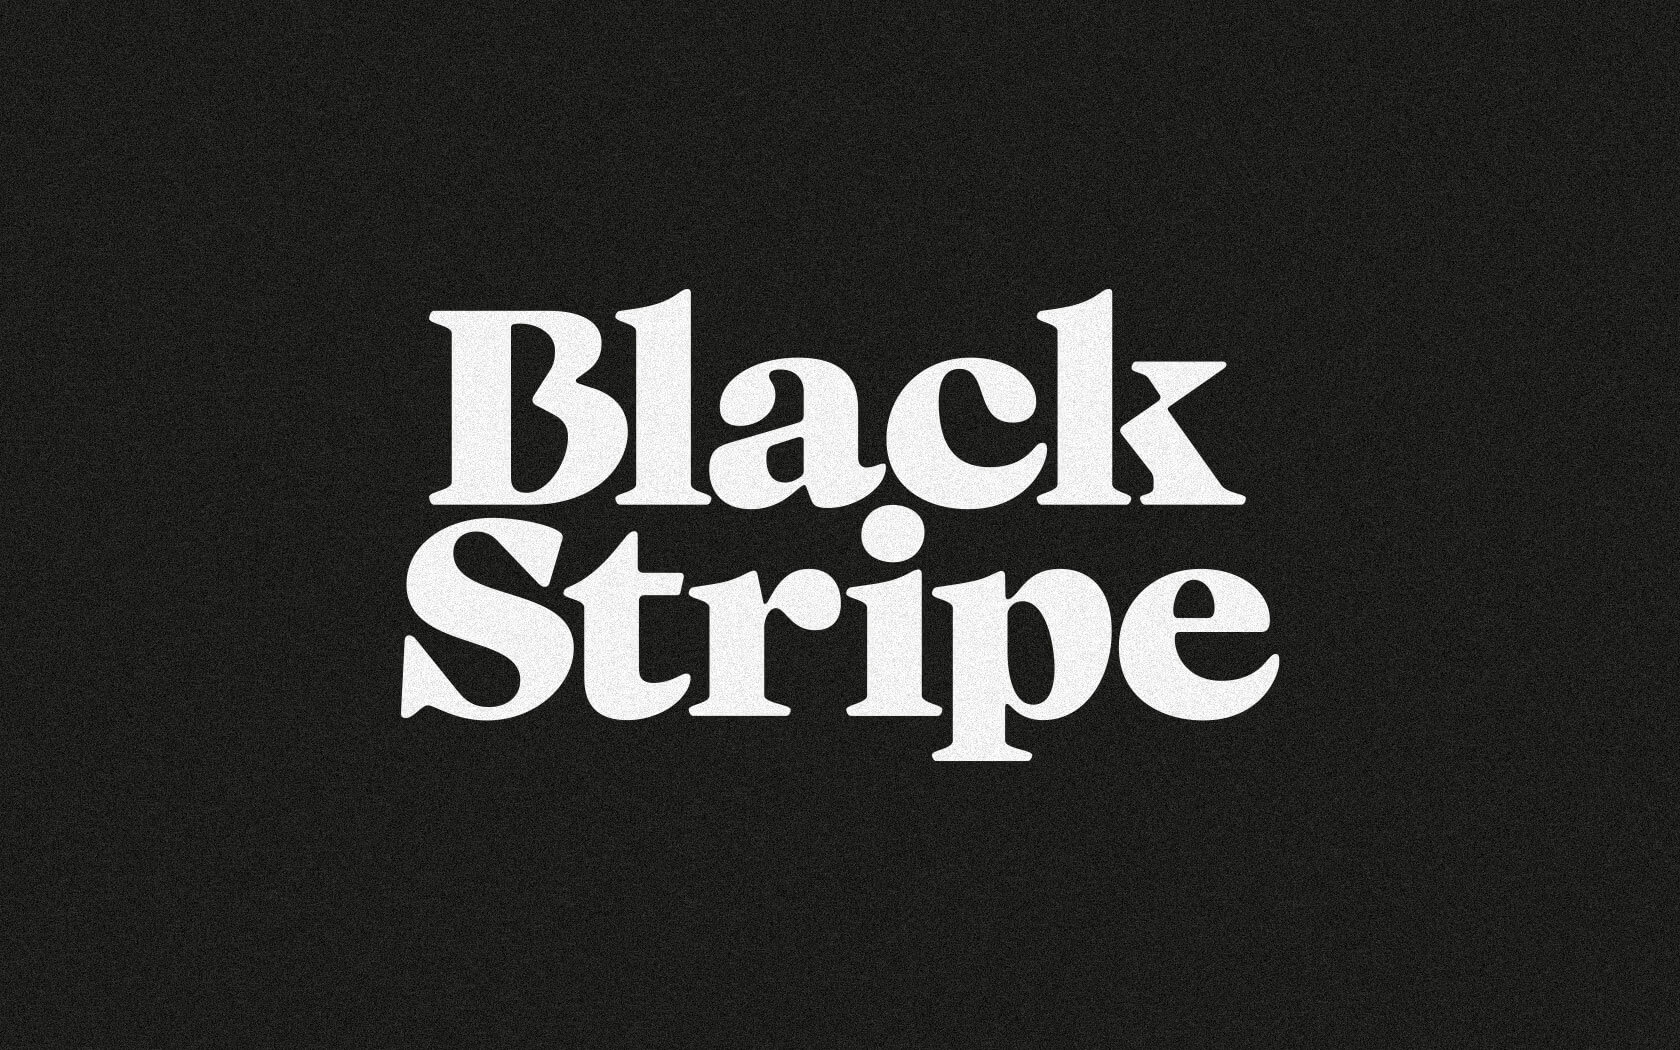 Black Stripe brand logo in white